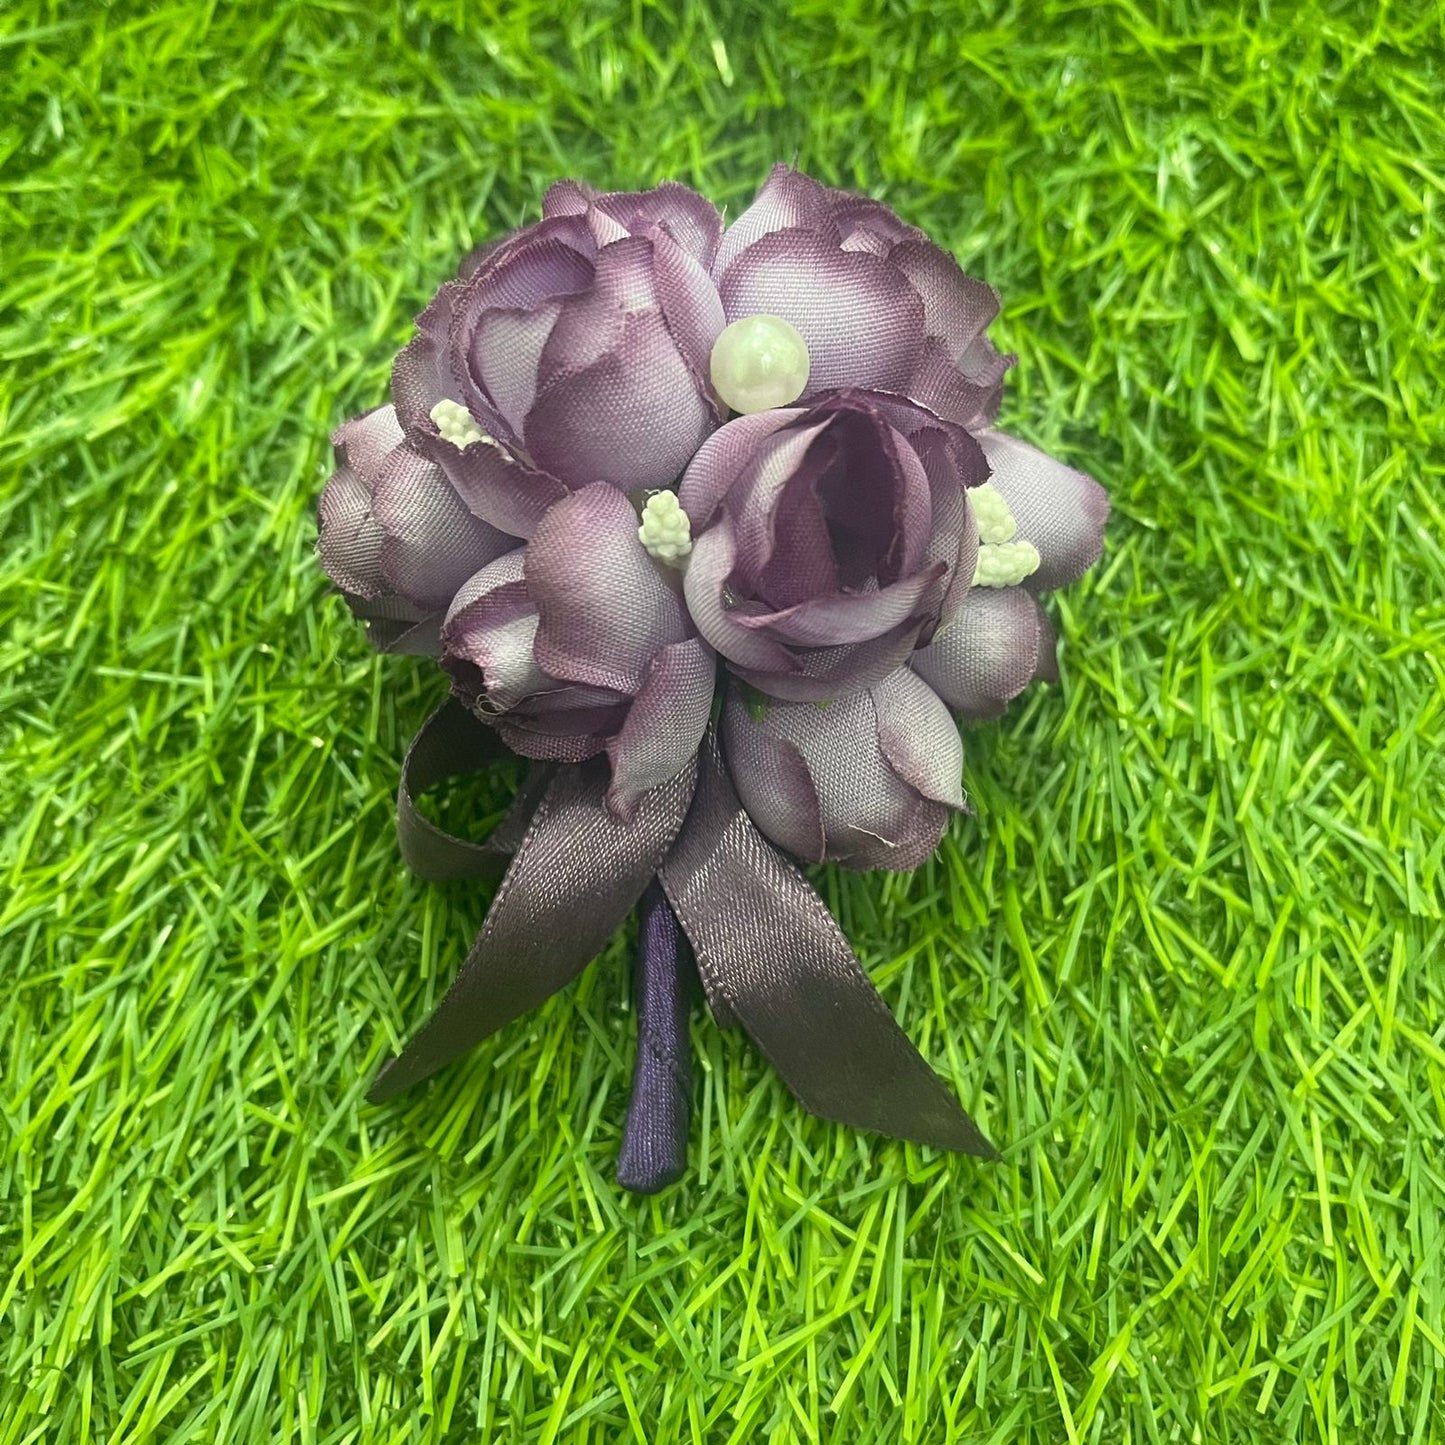 Purple Wedding Boutonniere Corsage For Men's Suit